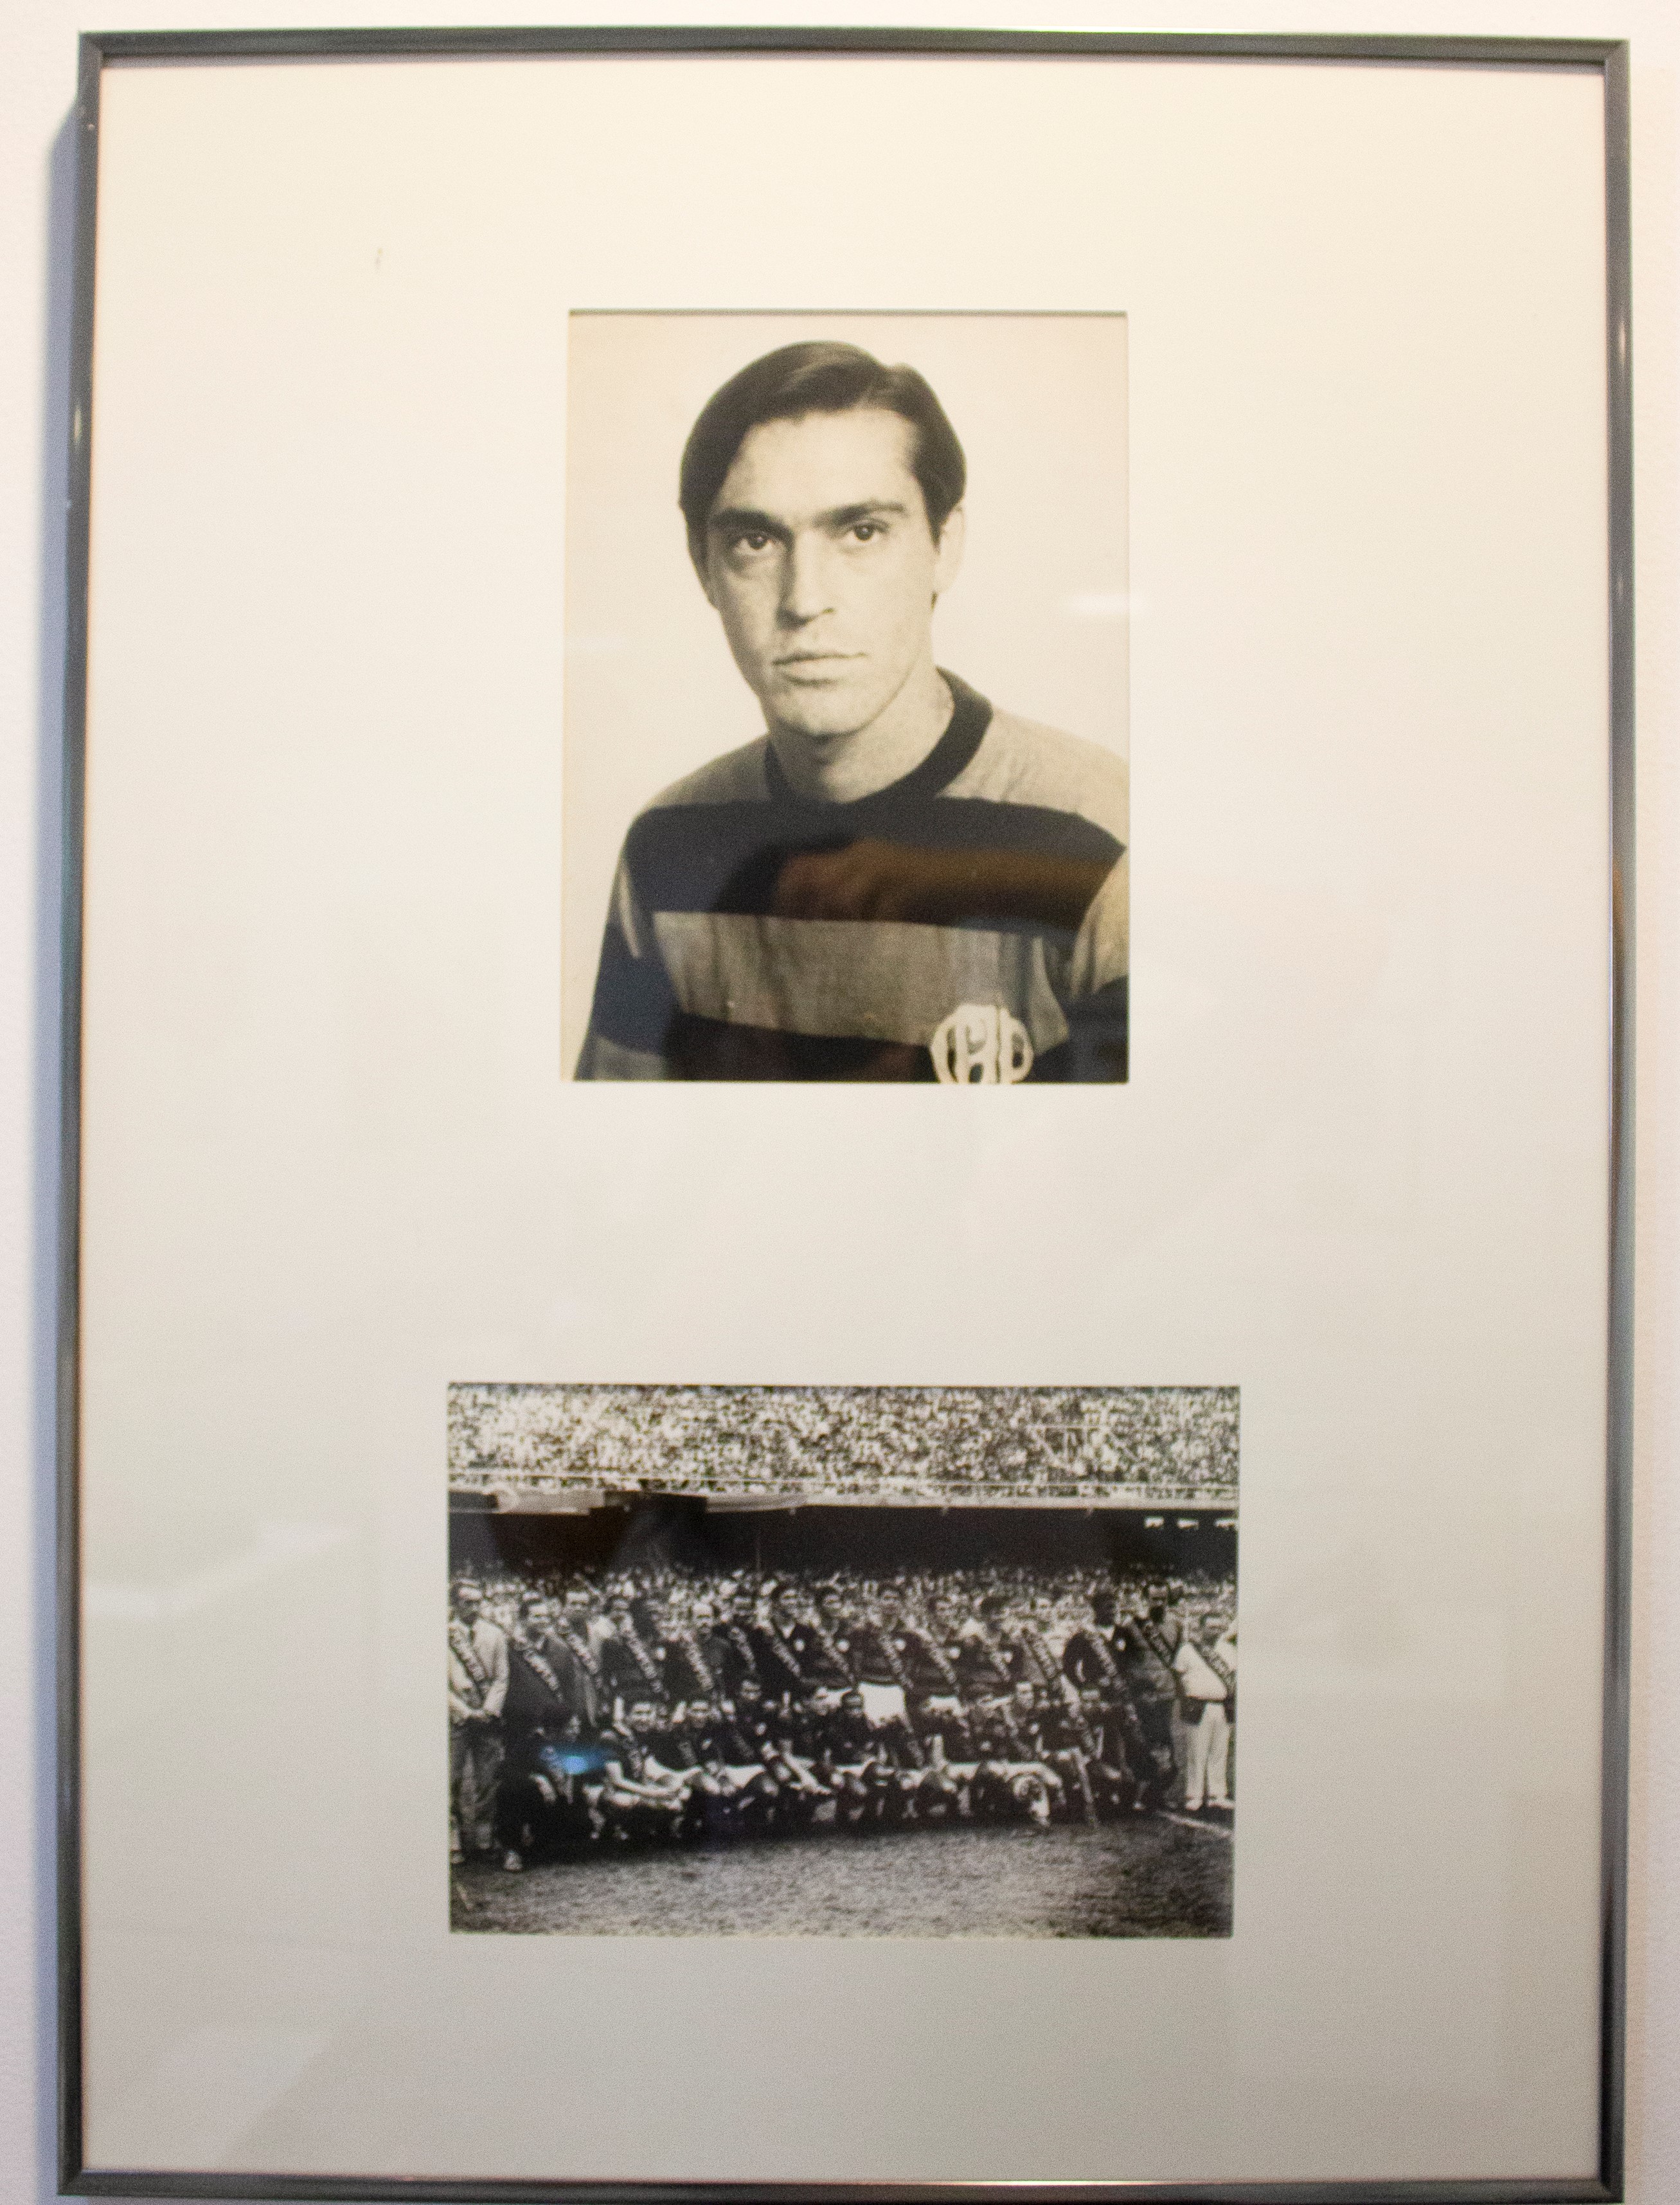 Sicupira com a camiseta do Athletico Paranaense; Em 1970, com a faixa de campeão, com todos os jogadores do Athletico.